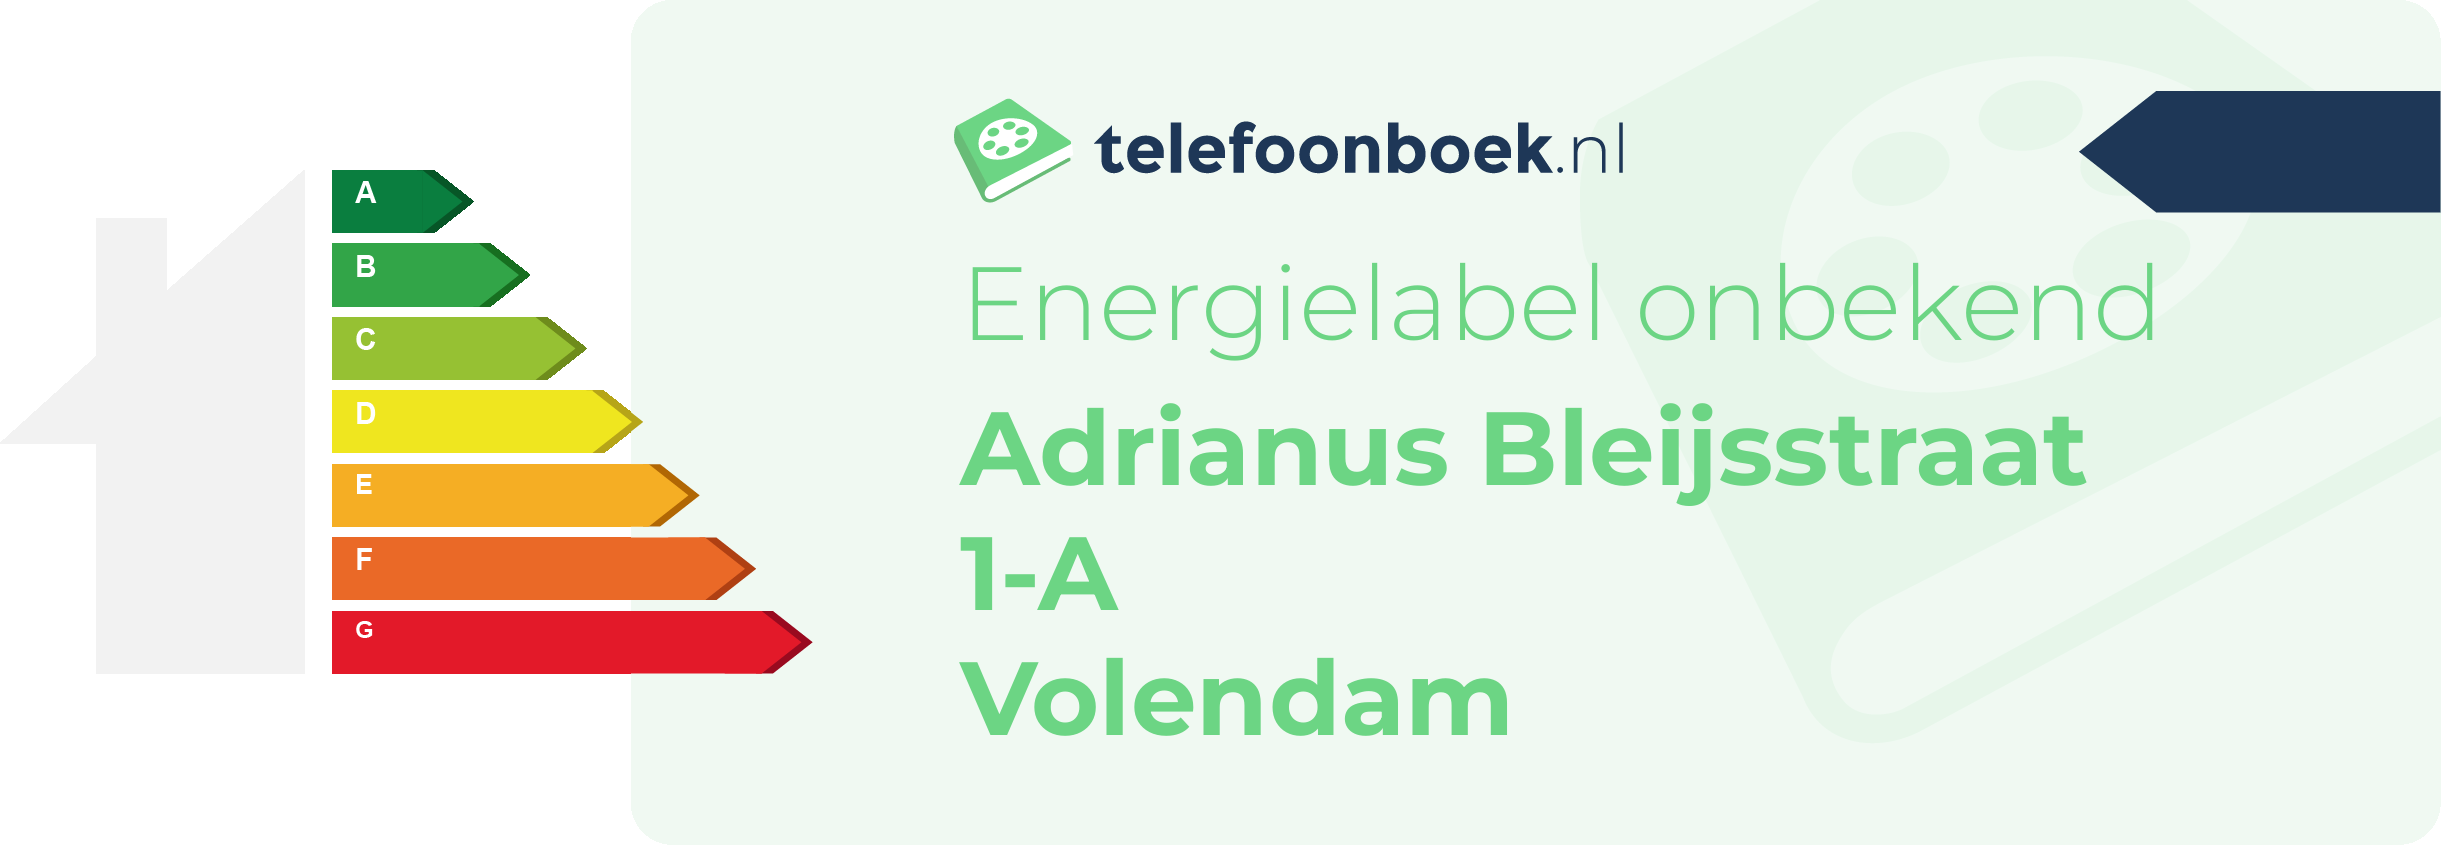 Energielabel Adrianus Bleijsstraat 1-A Volendam